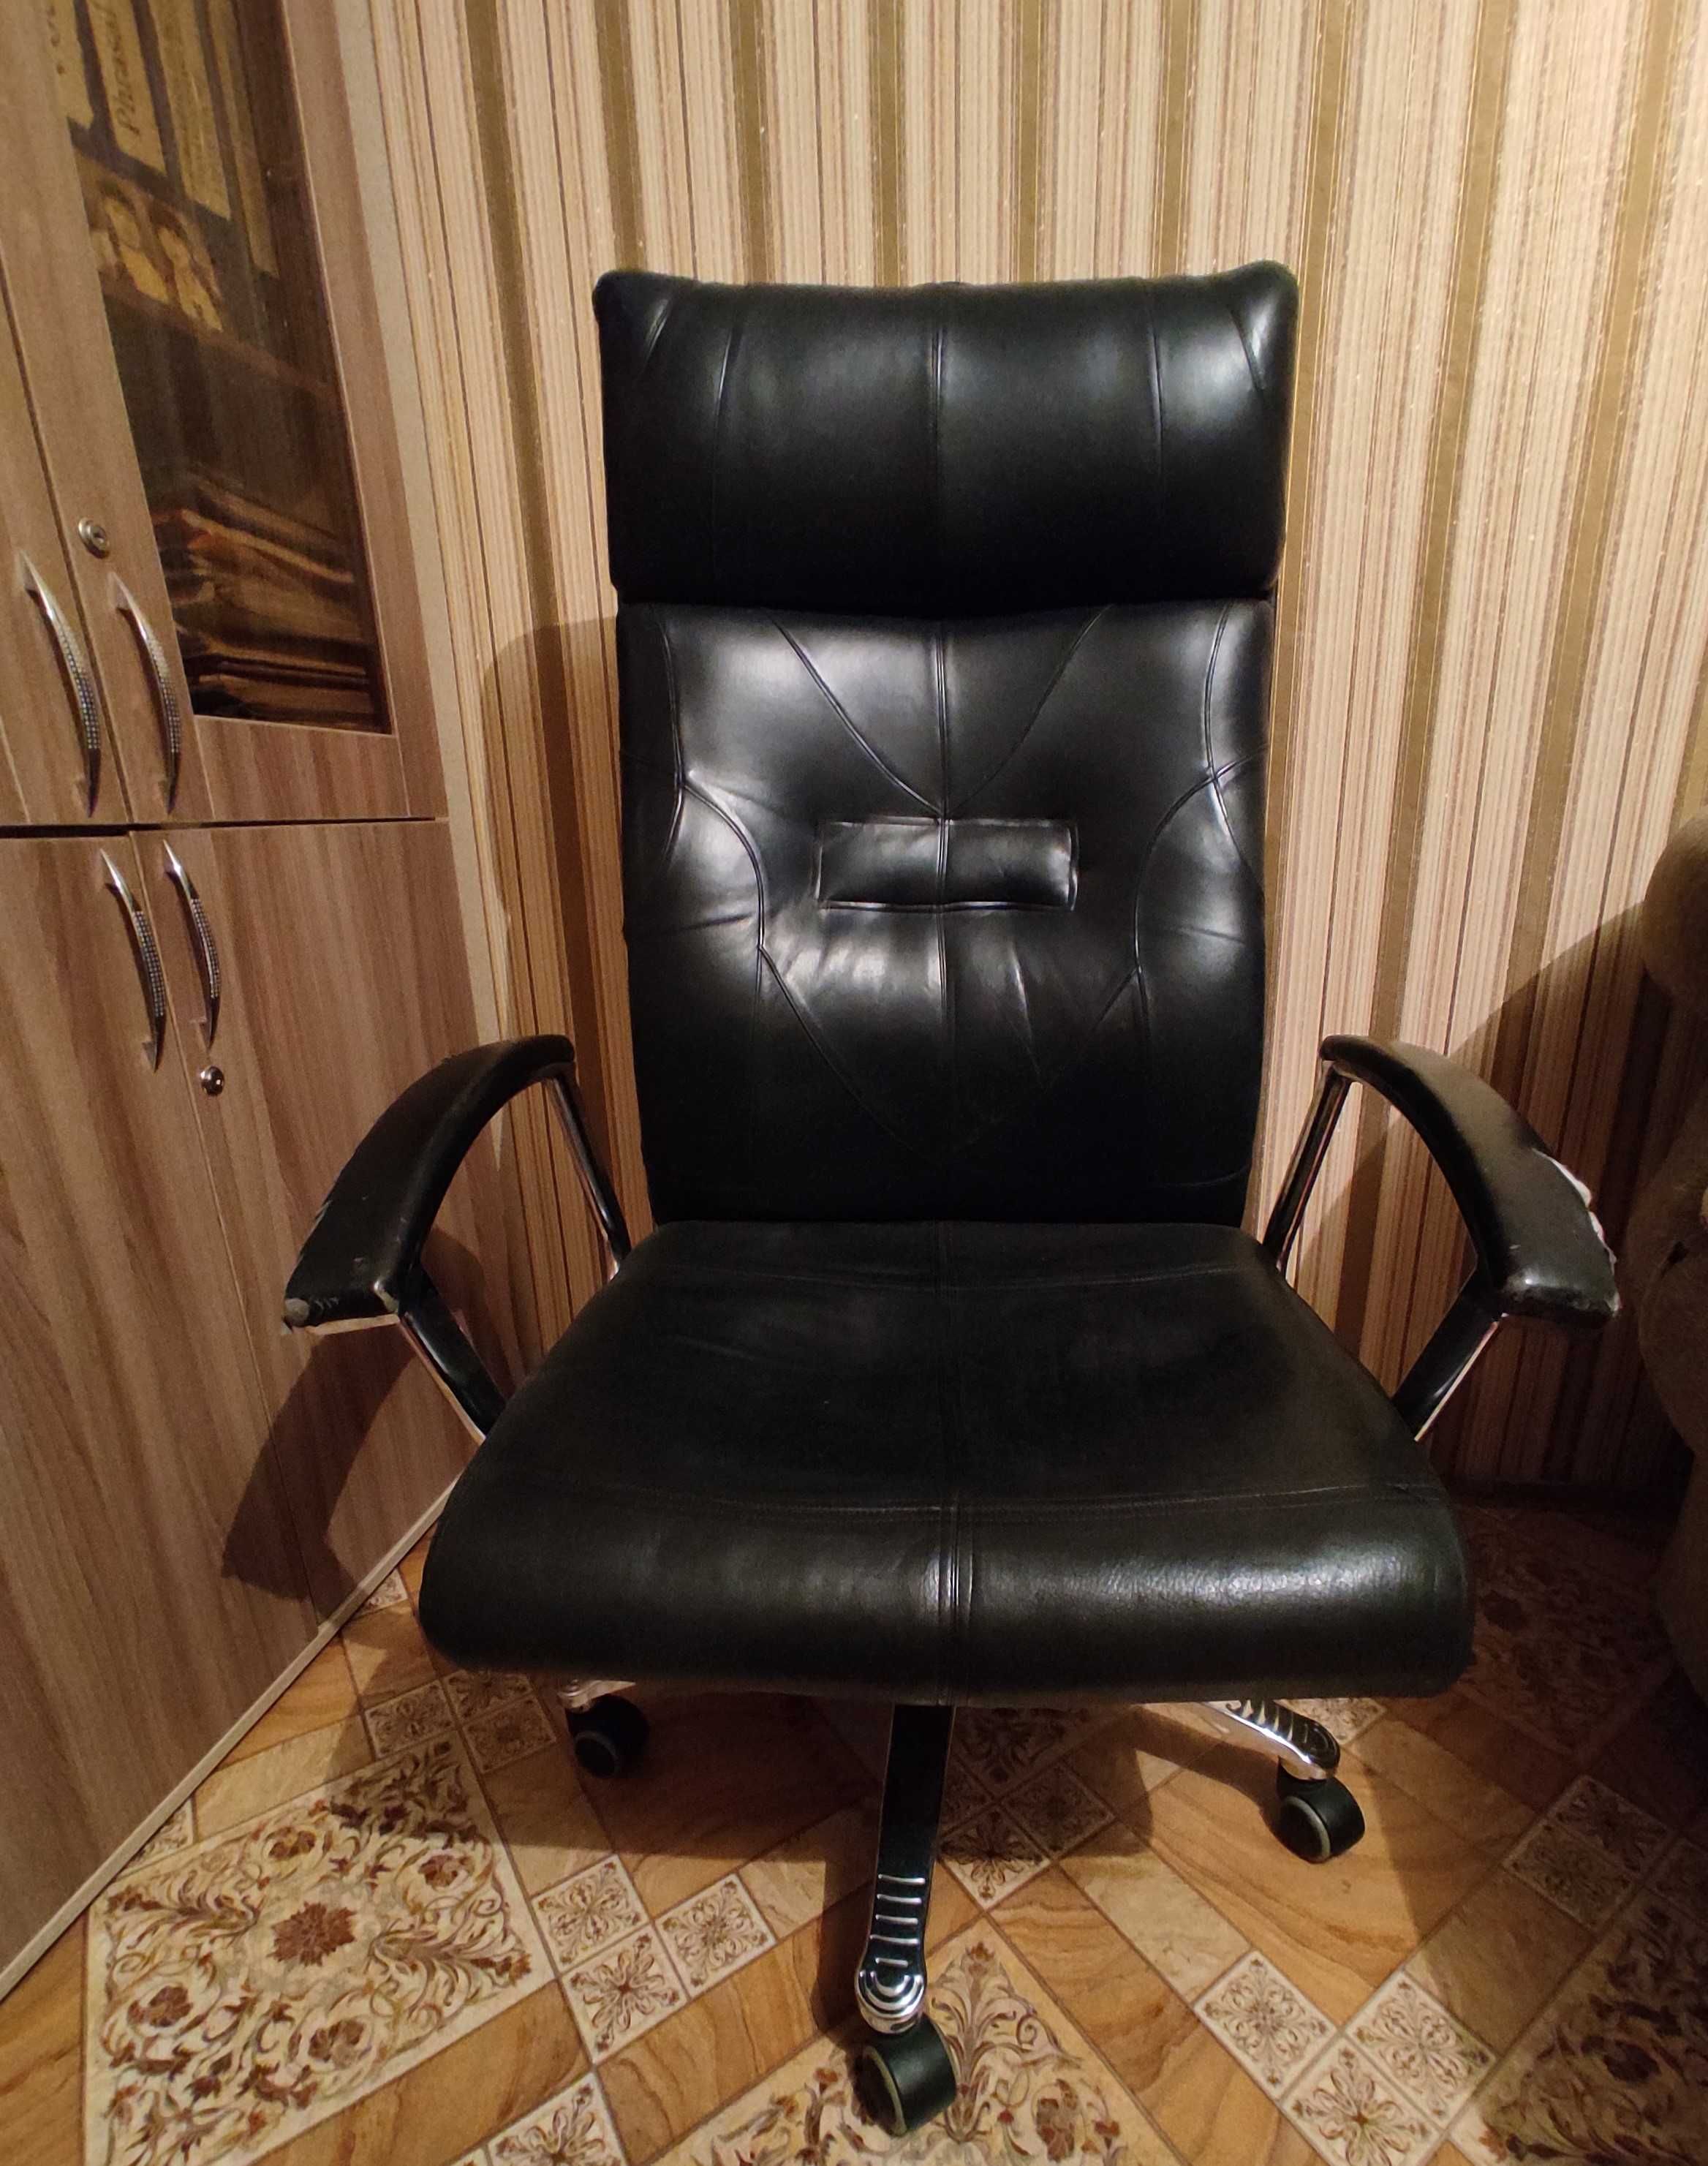 Ортопедическое кресло - офисная мебель